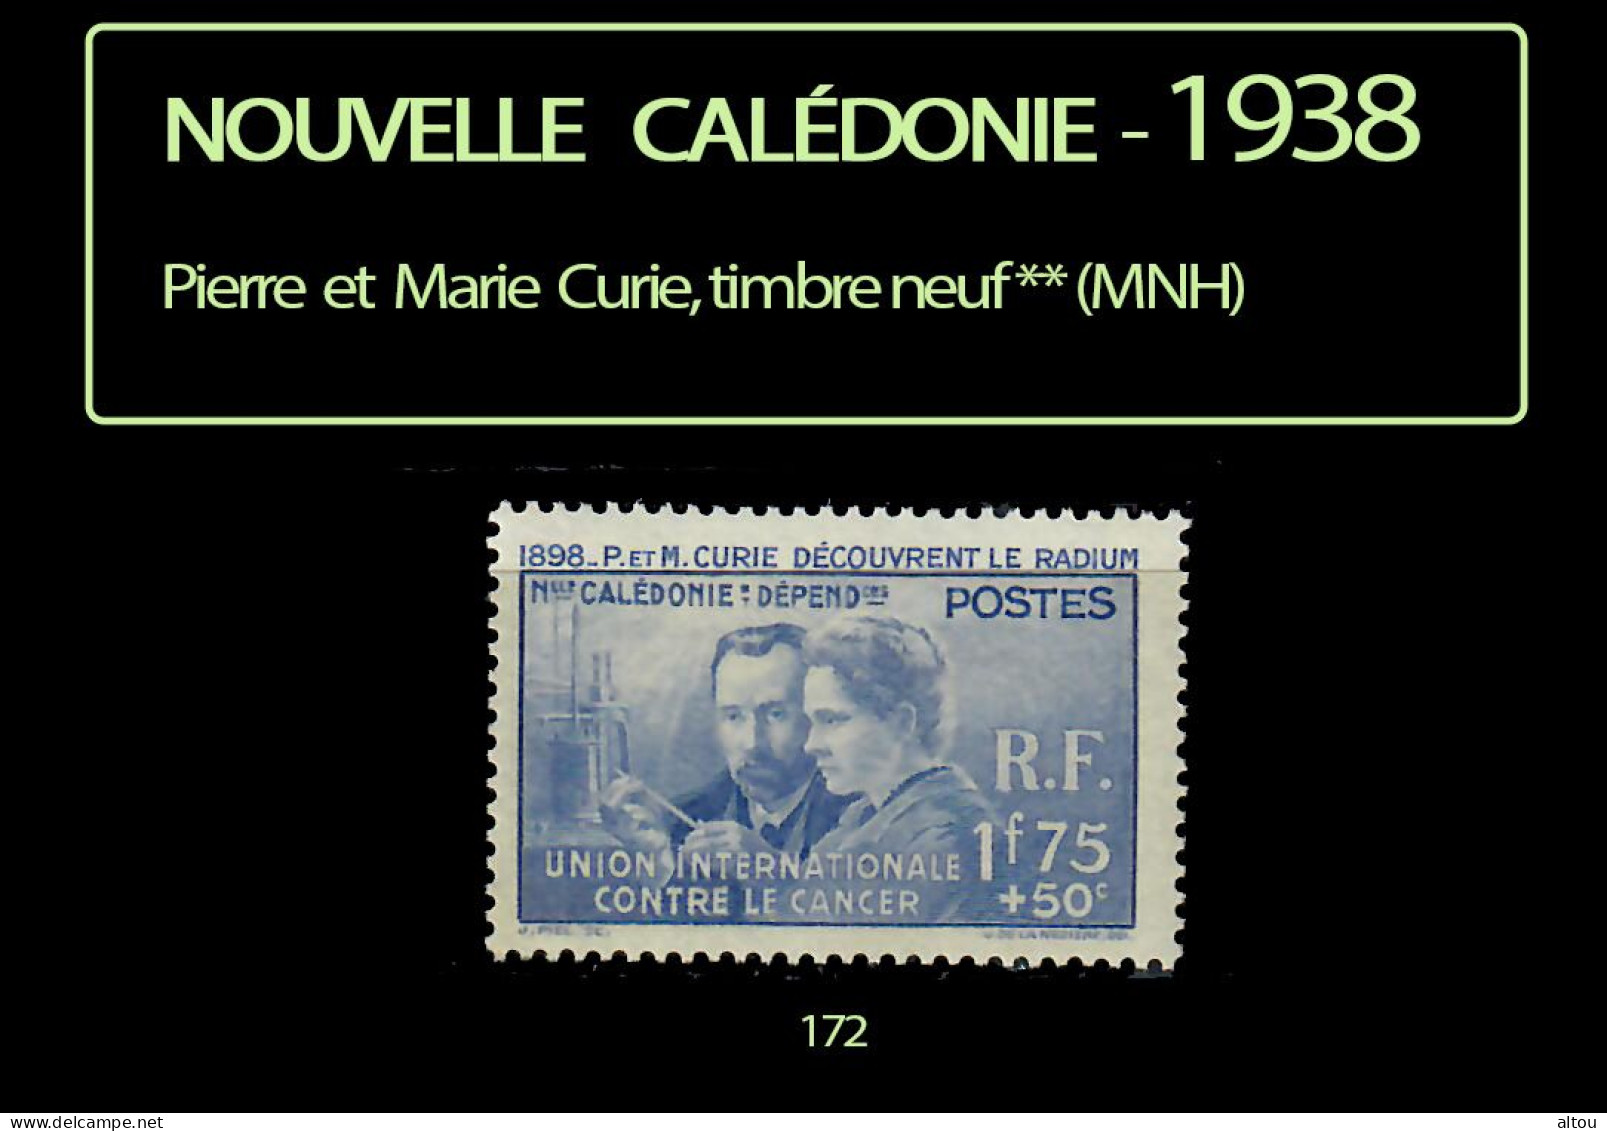 Nouvelle Calédonie 1938 - Pierre Et Marie Curie - Timbre Neuf ** (MNH) - Nuovi